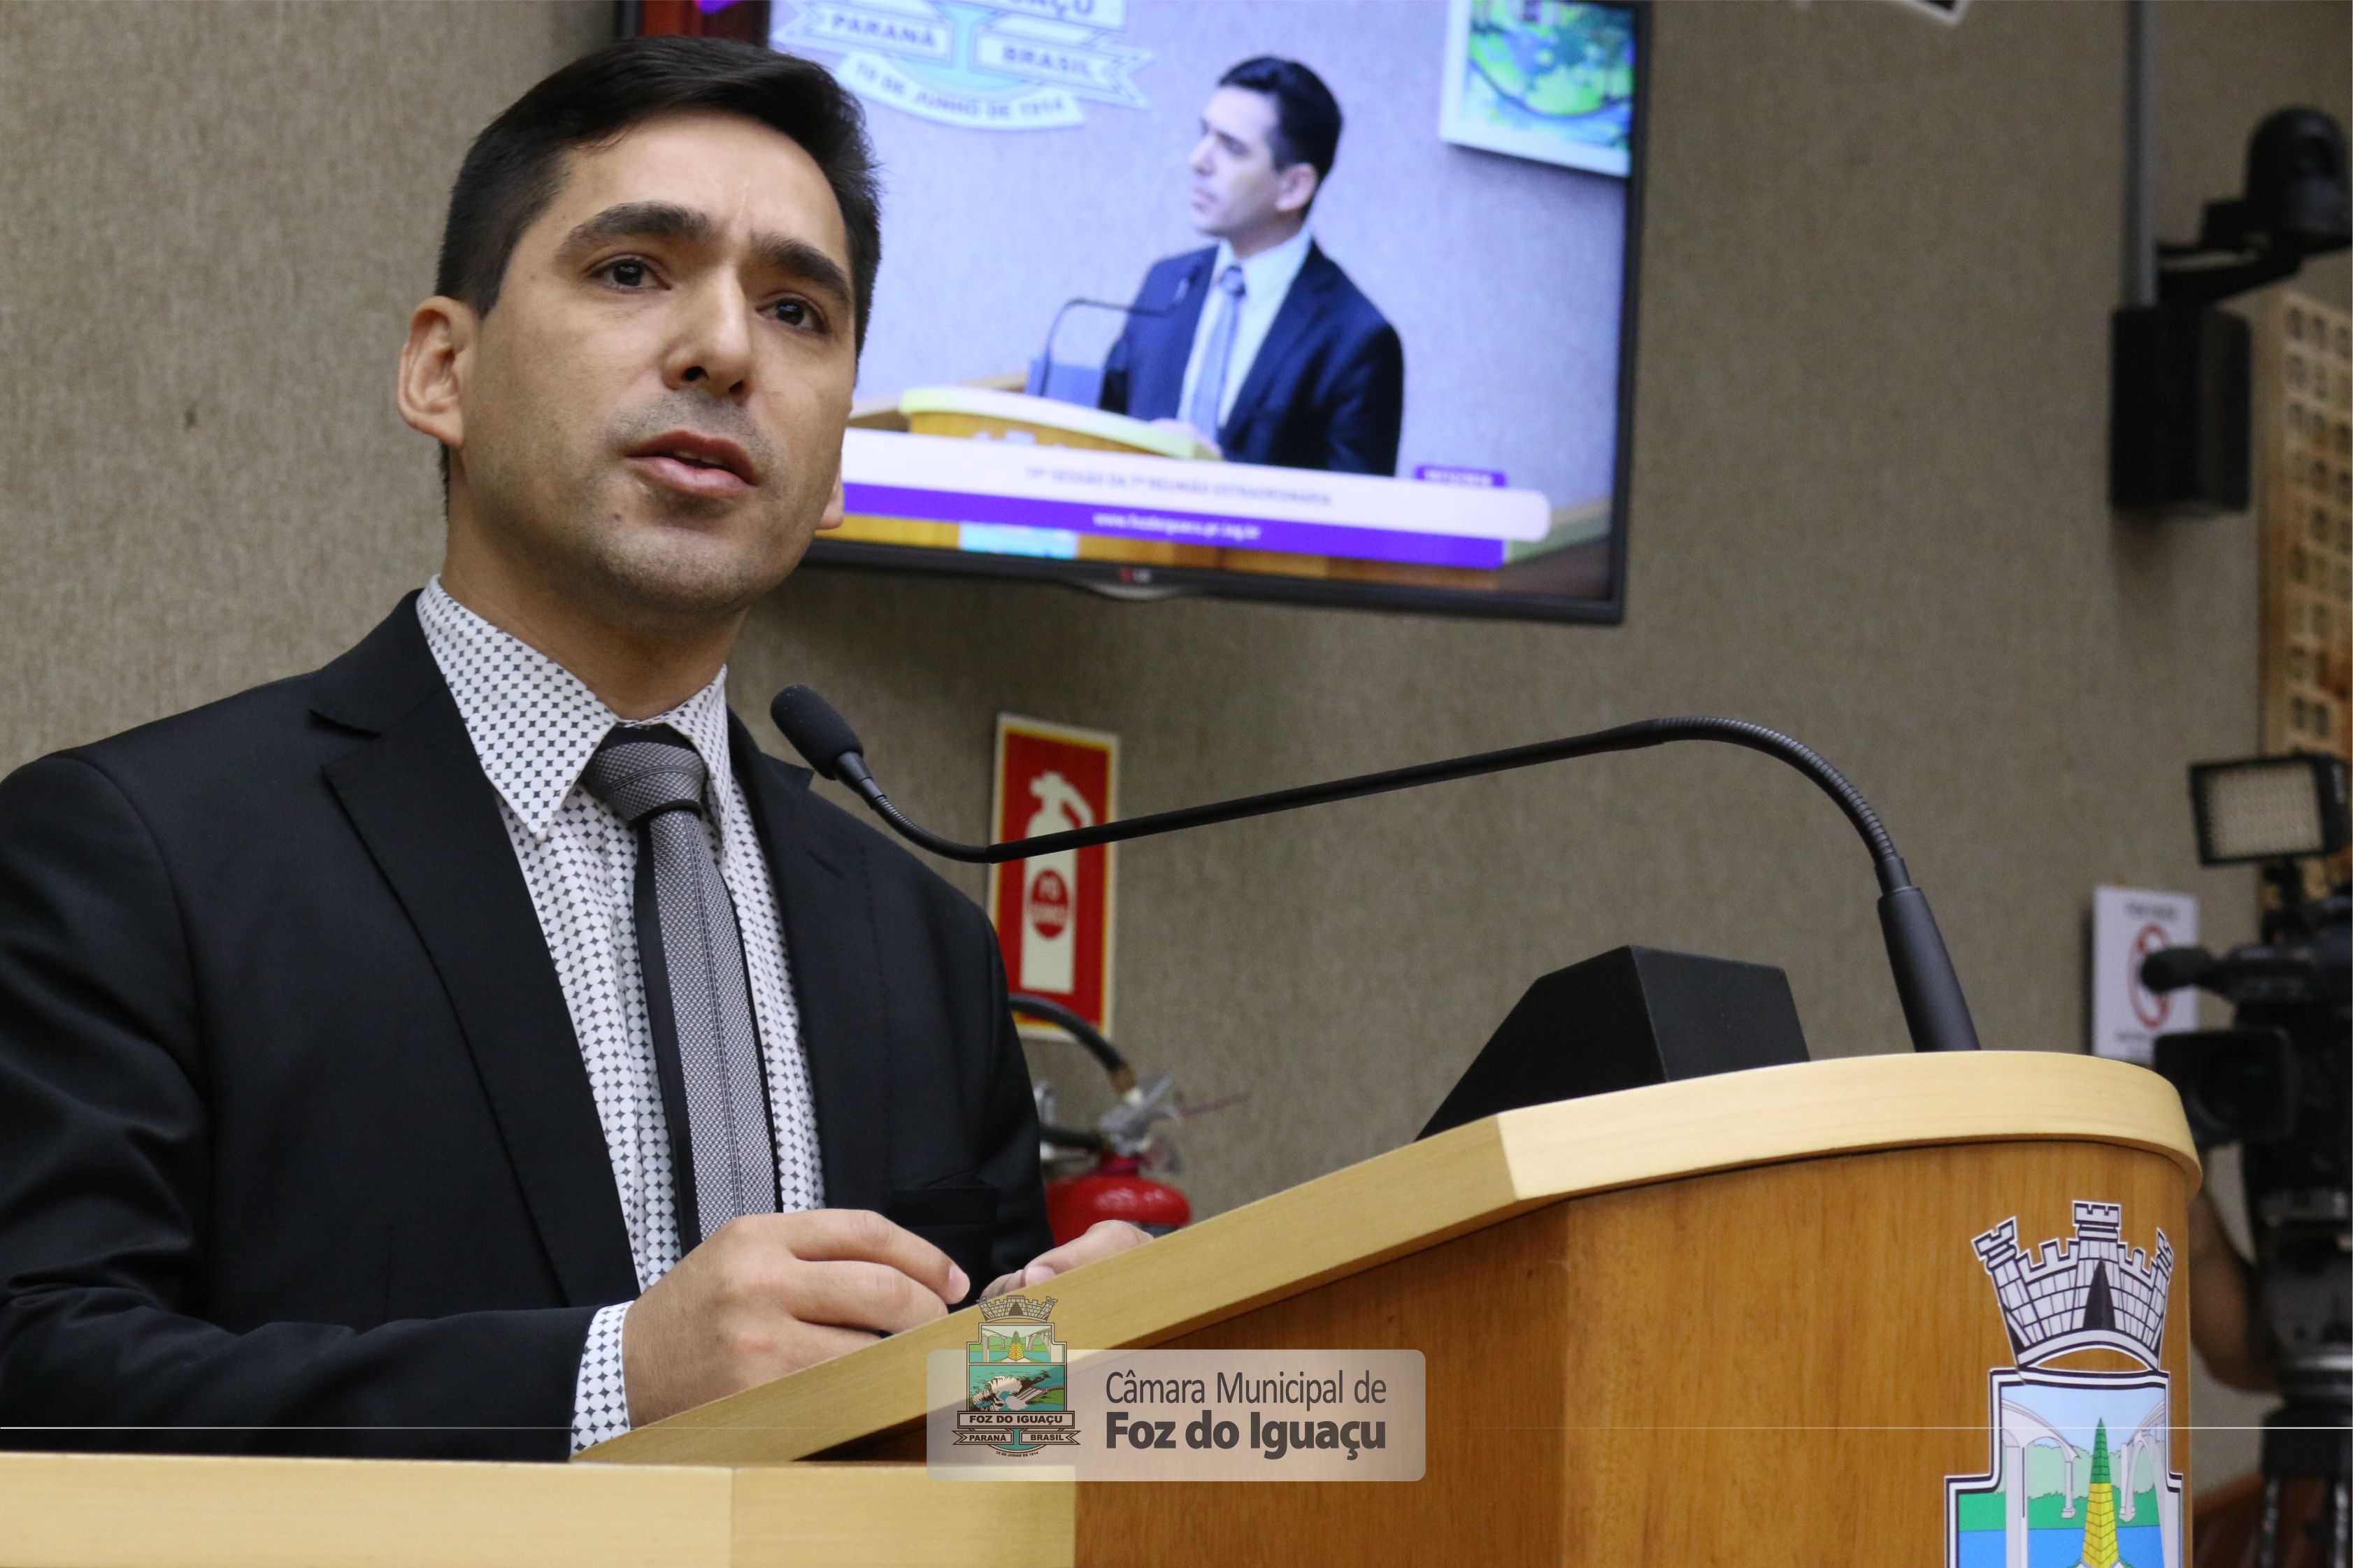 Vereador Marcio Rosa apresentou requerimentos na área de saúde, obras e infraestrutura